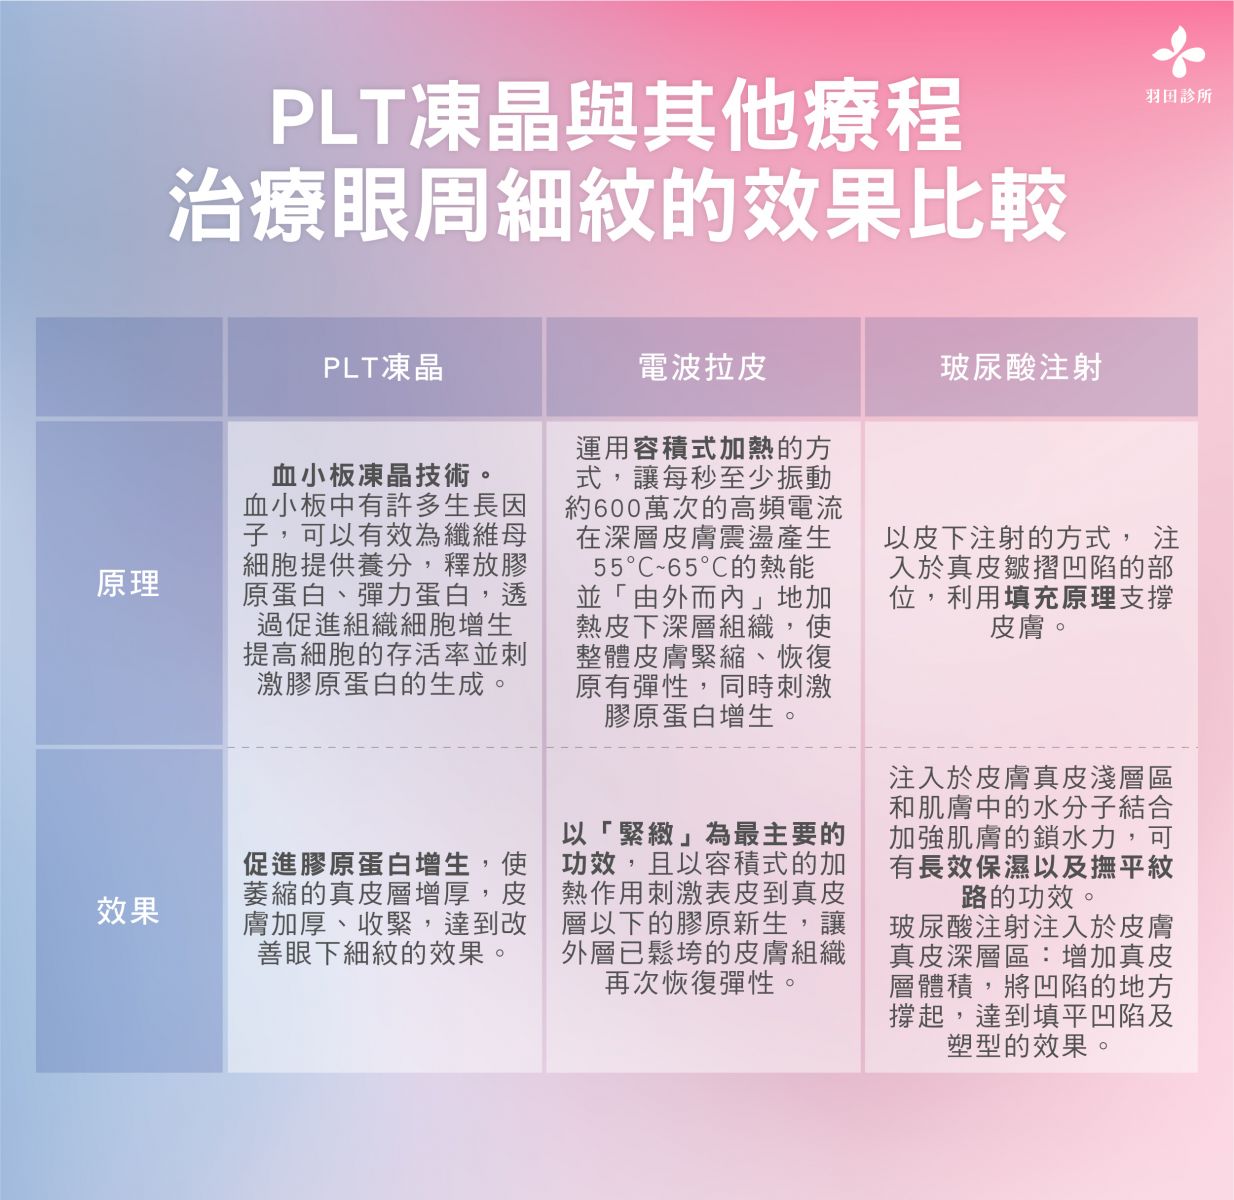 羽田診所吳佩謙醫師製圖說明PLT凍晶與其他療程的比較